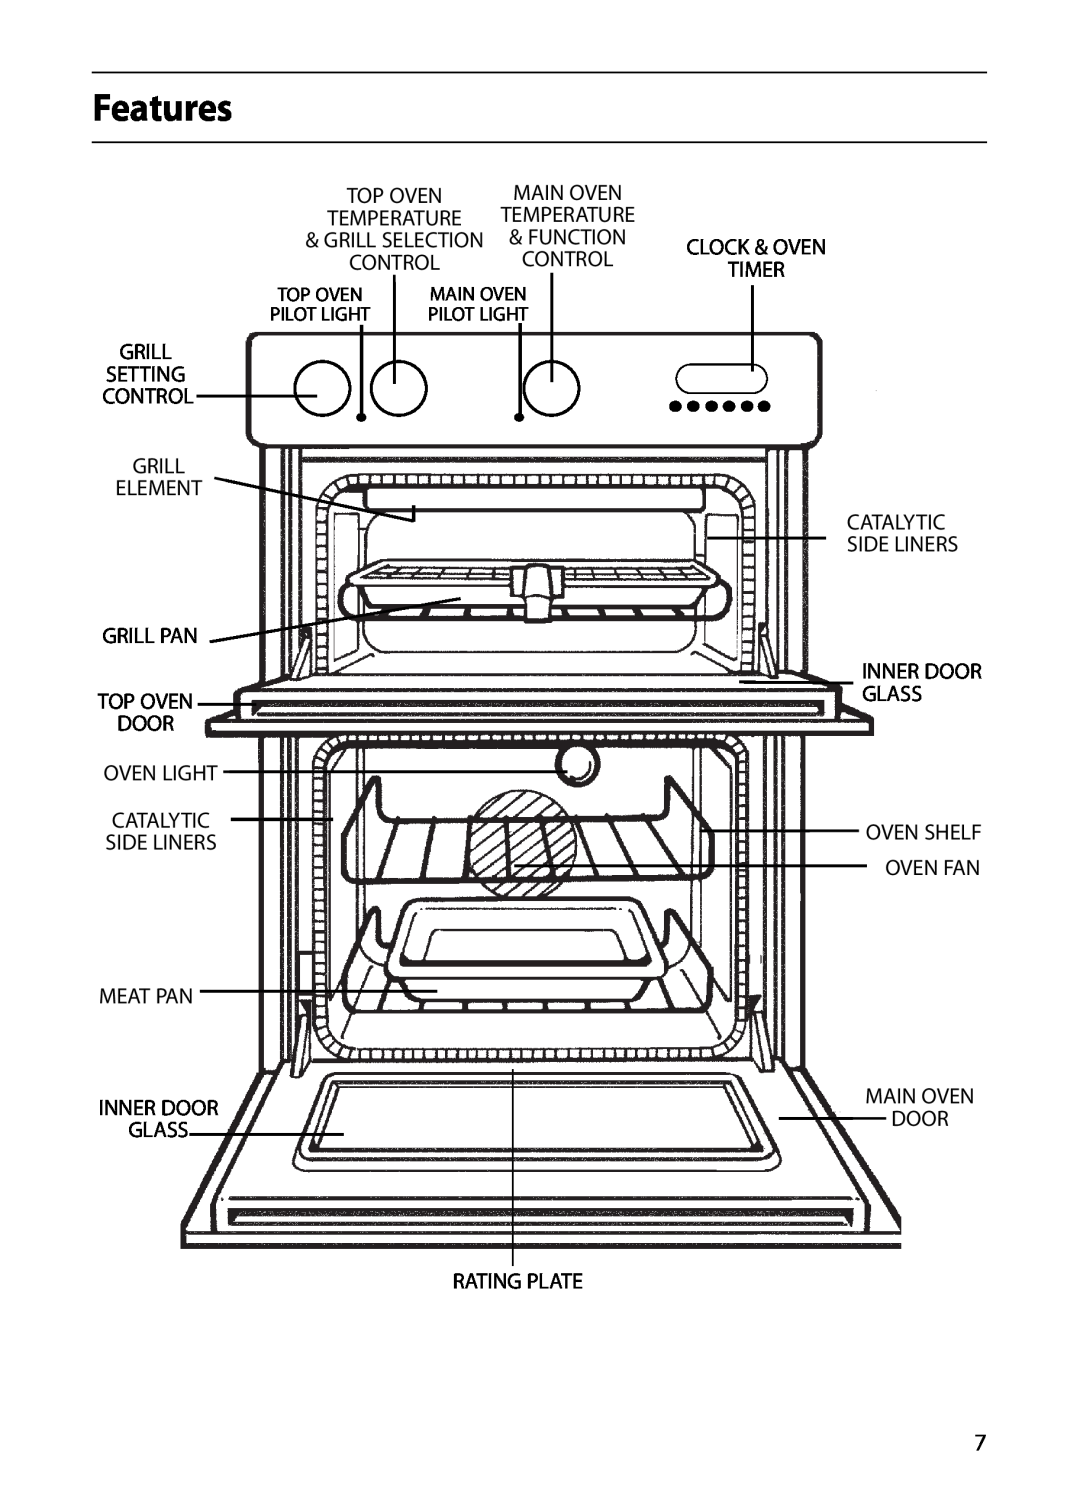 Indesit FDE20 Features, Grill Element Grill Pan Top Oven Door, Meat Pan, Oven Fan, Inner Door Glass, Main Oven Door 